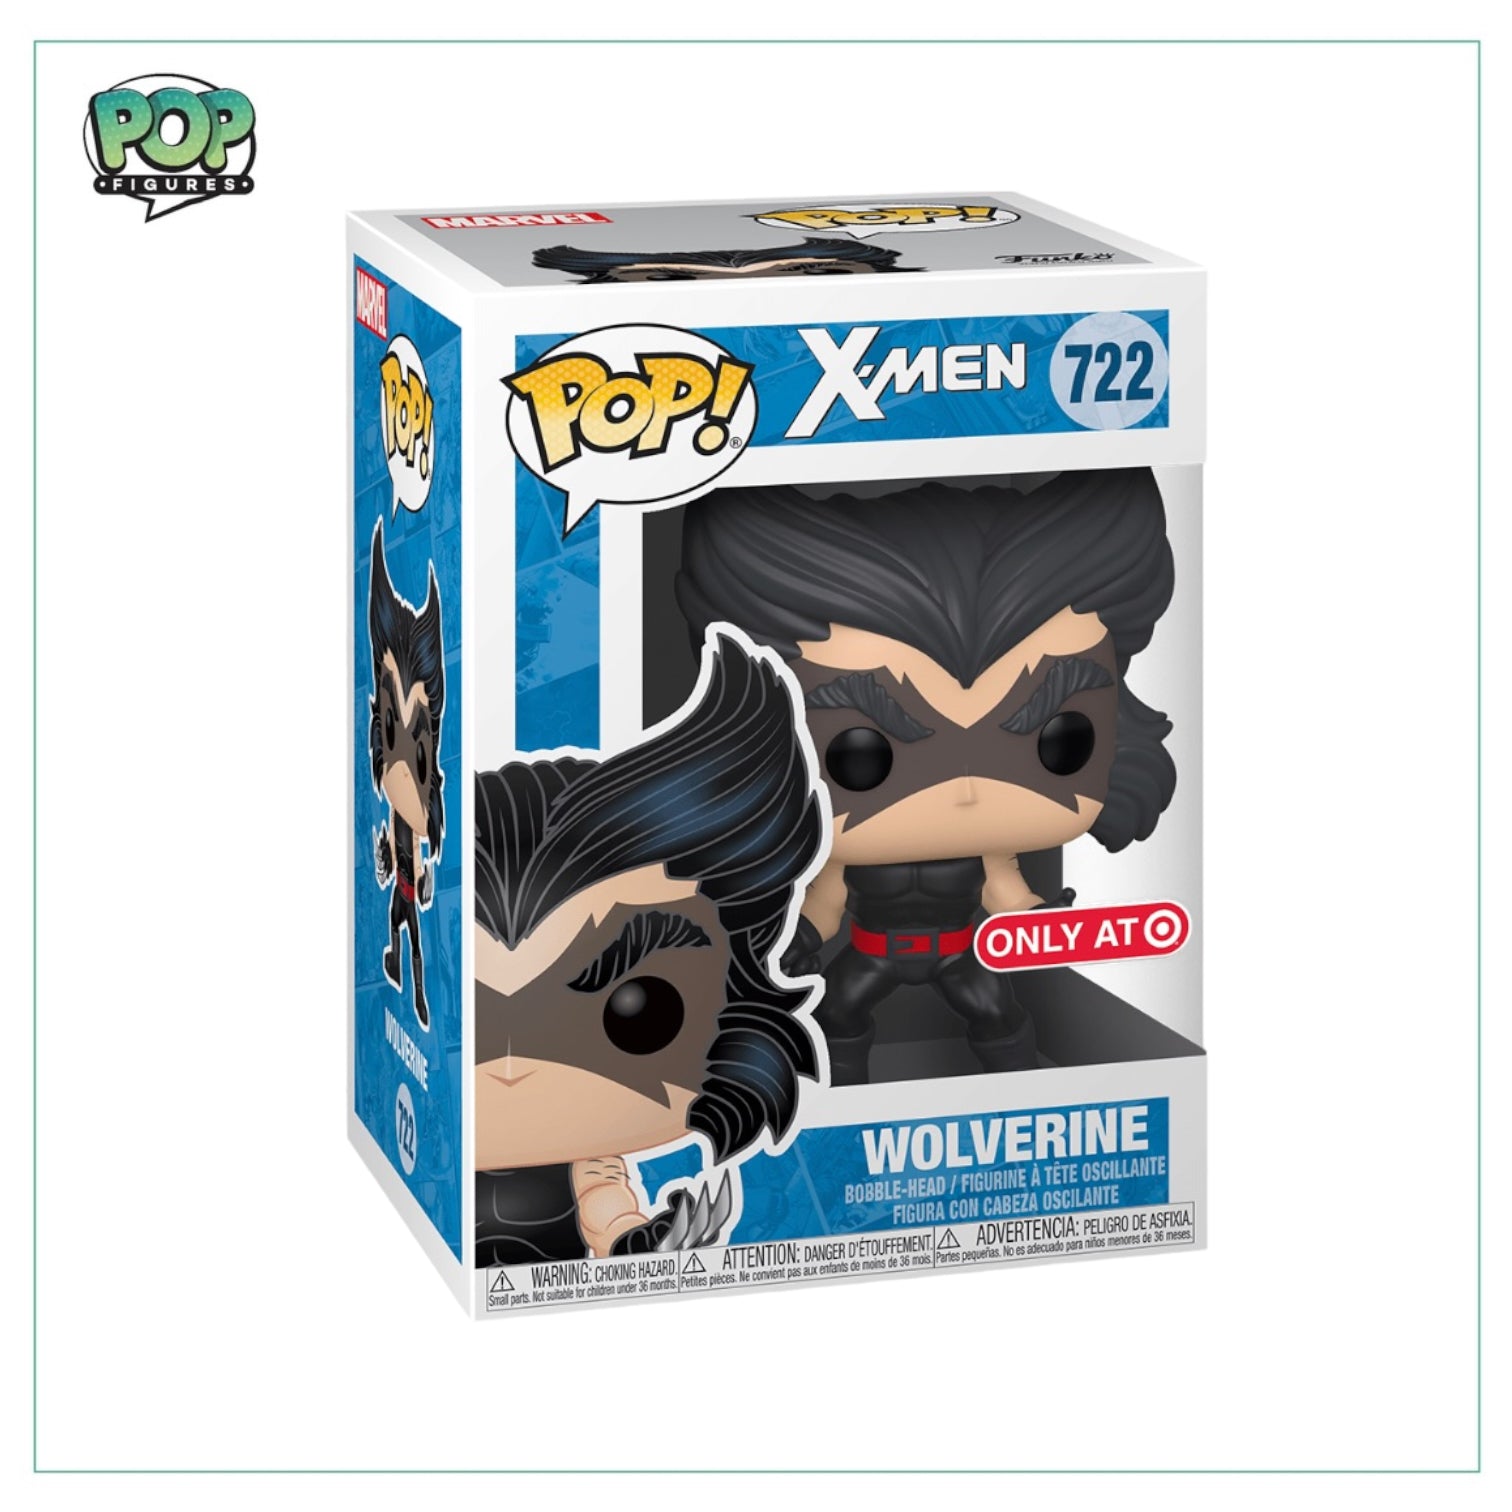 Wolverine #722 Funko Pop! -  Marvel X-Men - Target Exclusive